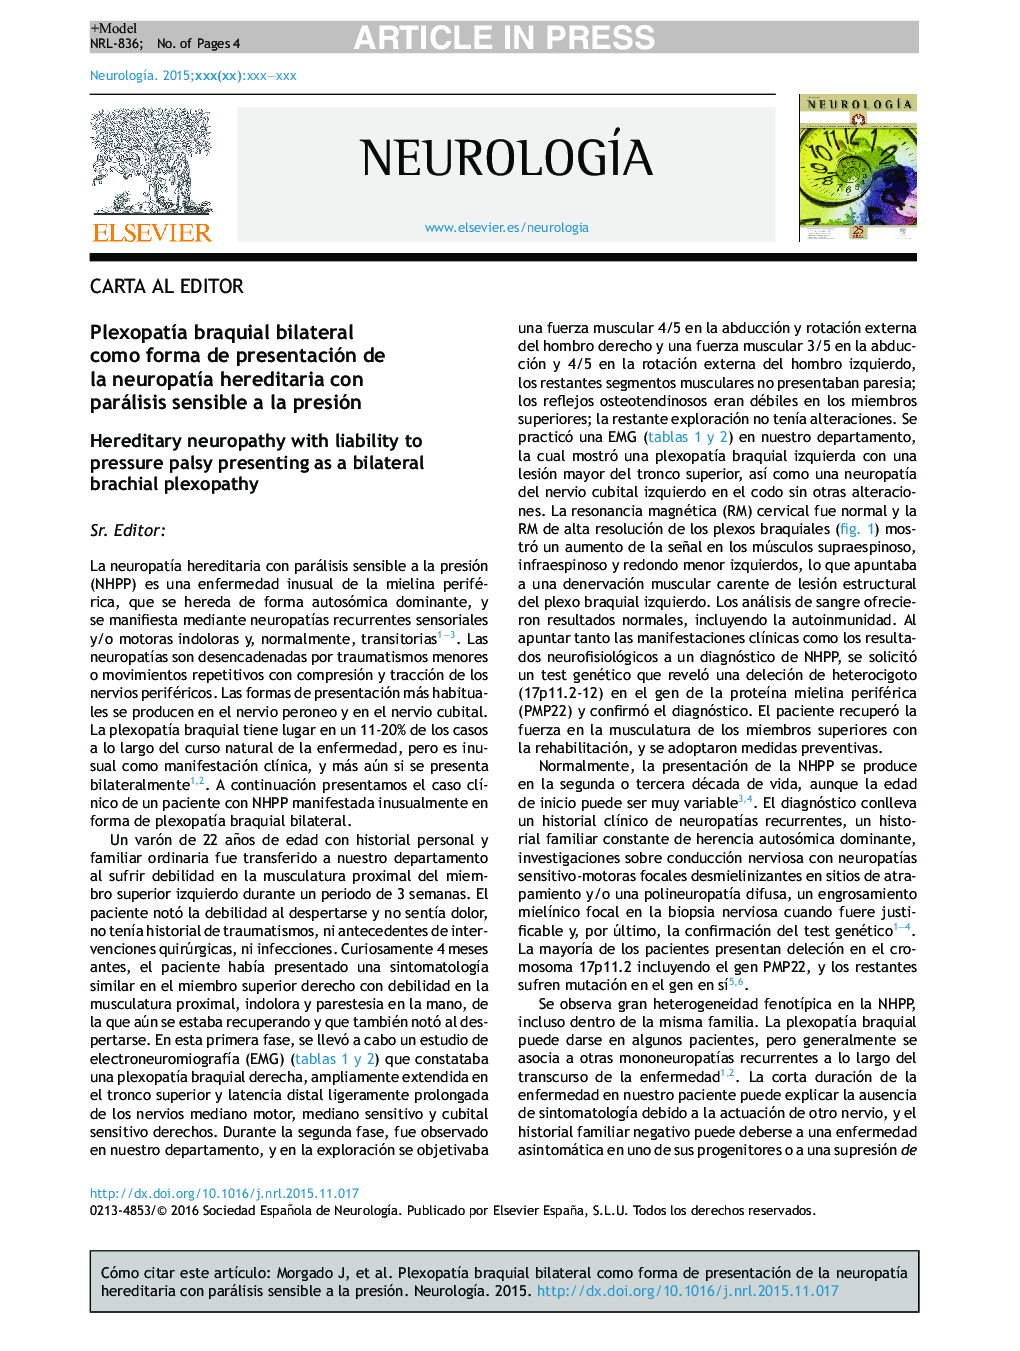 PlexopatÃ­a braquial bilateral como forma de presentación de la neuropatÃ­a hereditaria con parálisis sensible a la presión